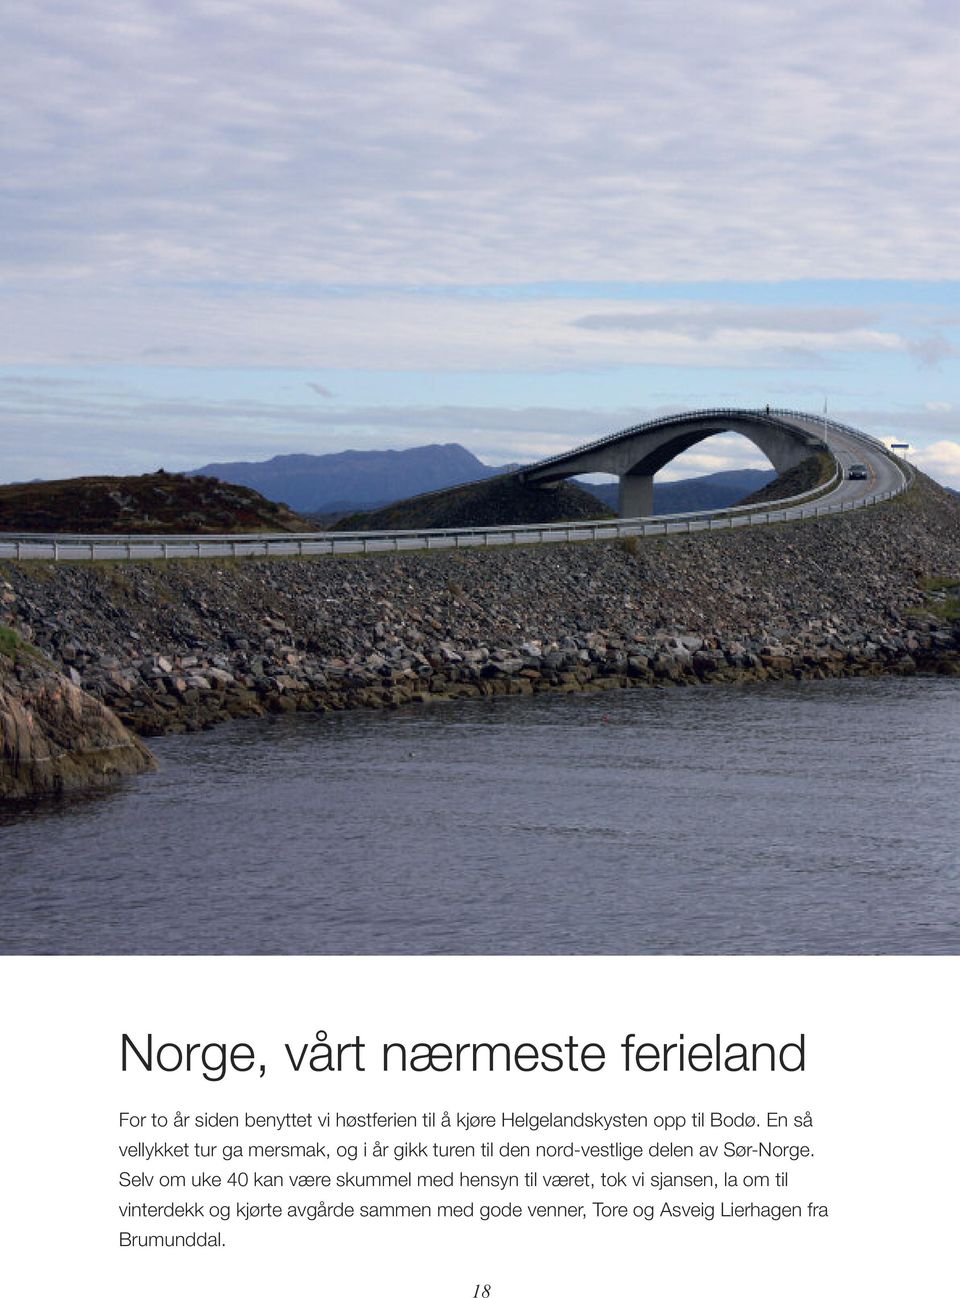 En så vellykket tur ga mersmak, og i år gikk turen til den nord-vestlige delen av Sør-Norge.